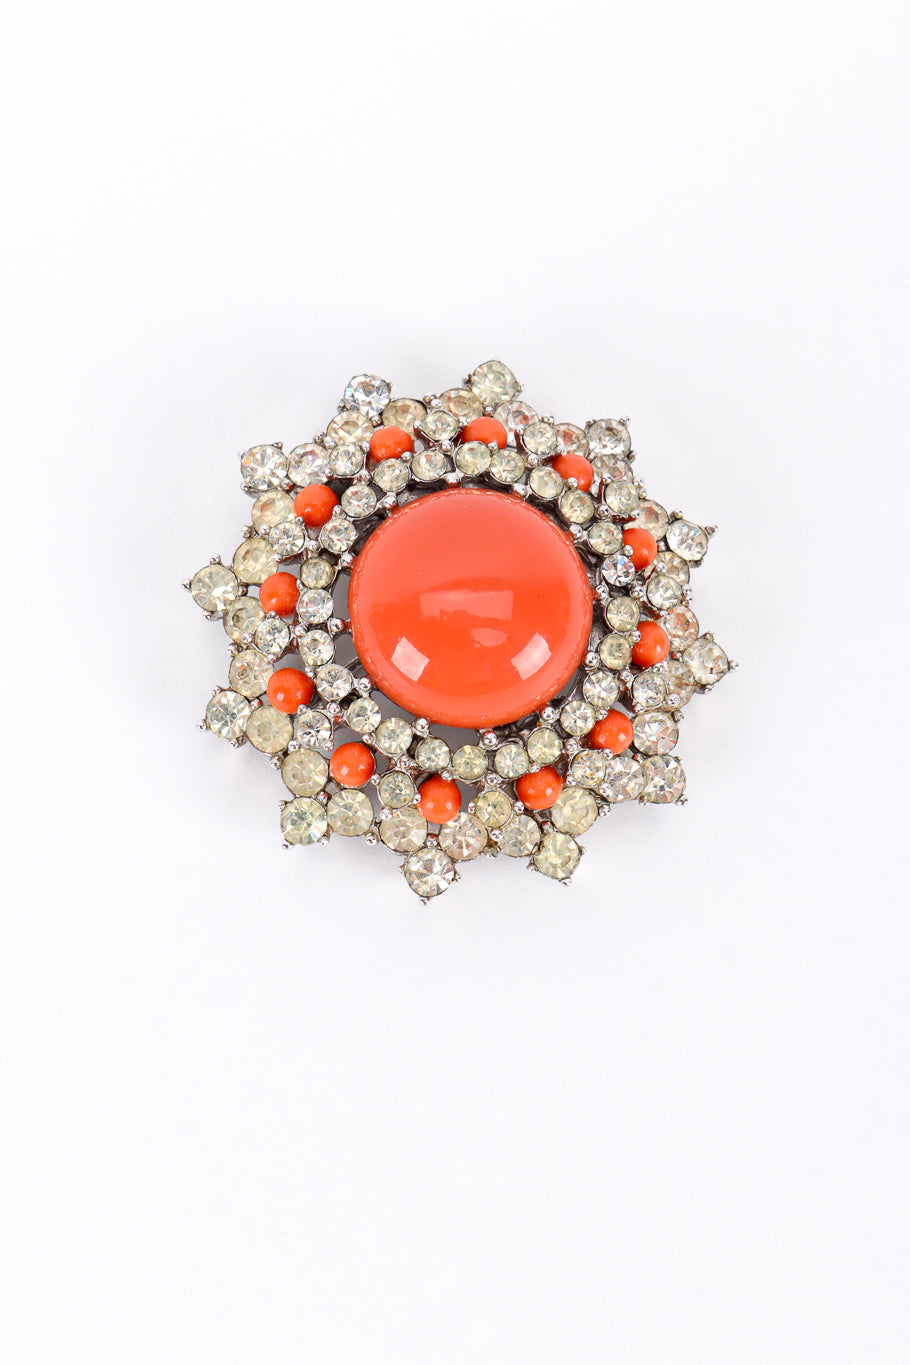 Vintage Trifari Coral Lucite Necklace & Earring Set pendant brooch front @recess la